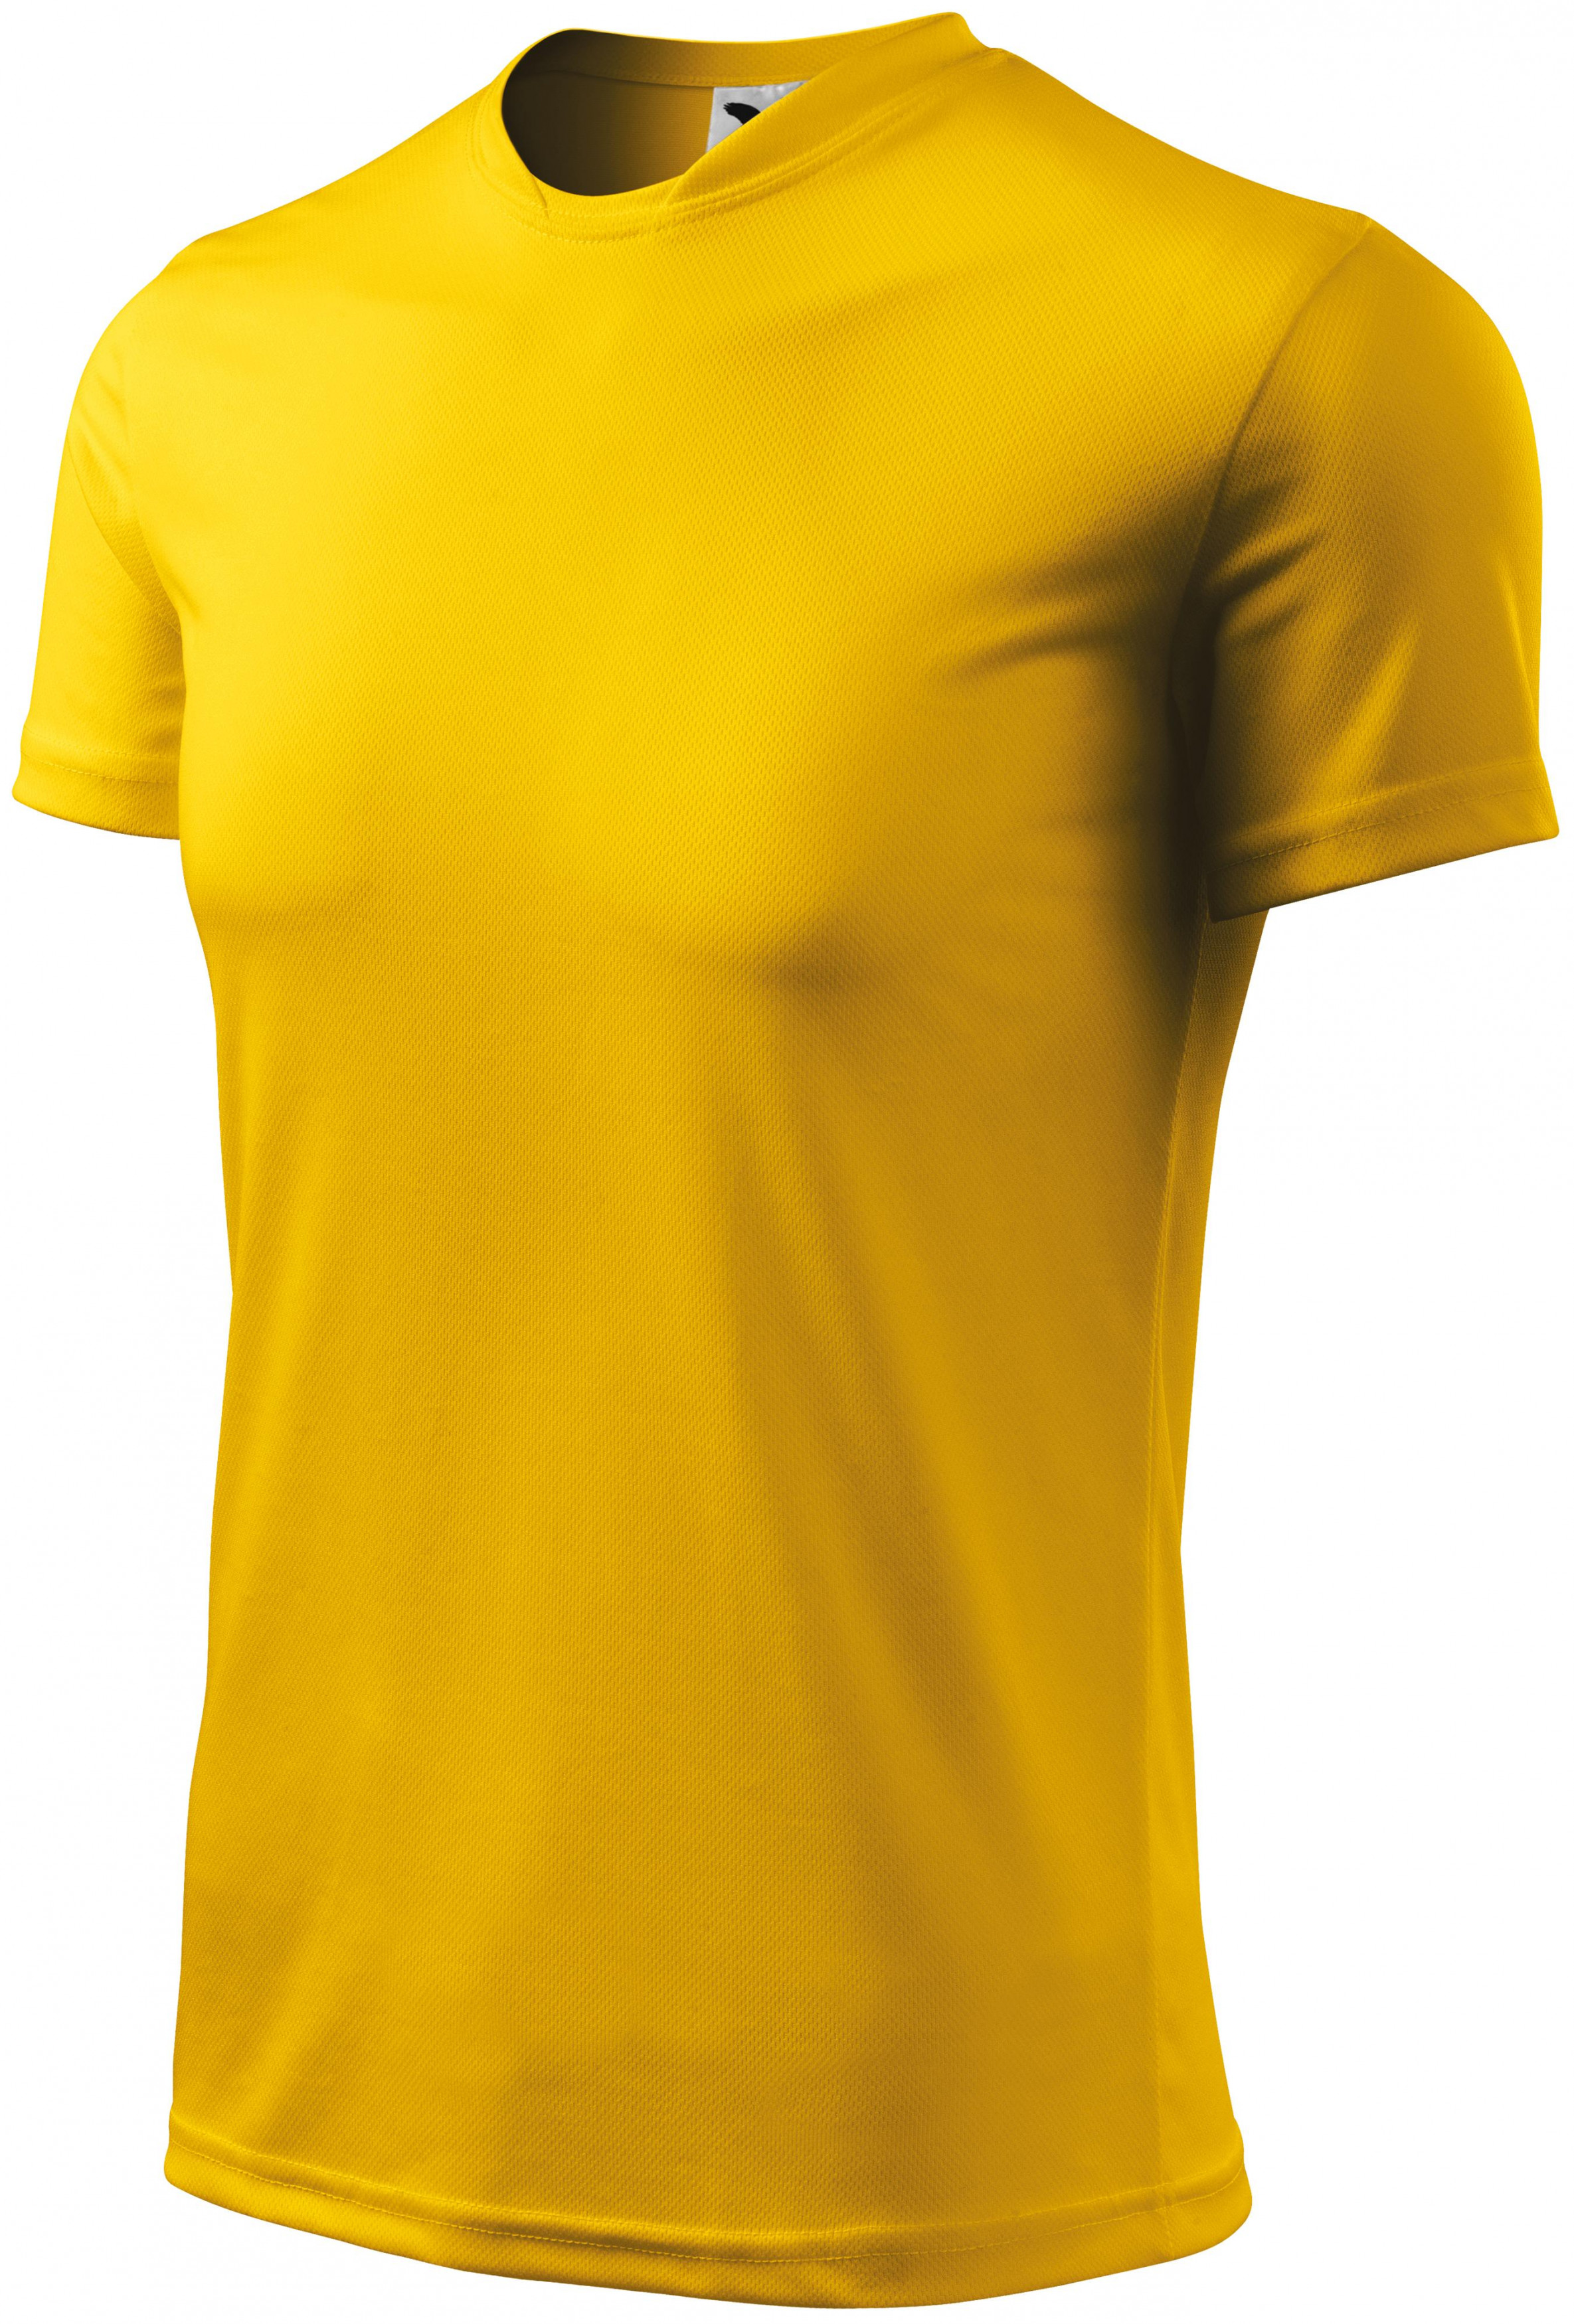 Športové tričko detské, žltá, 122cm / 6rokov